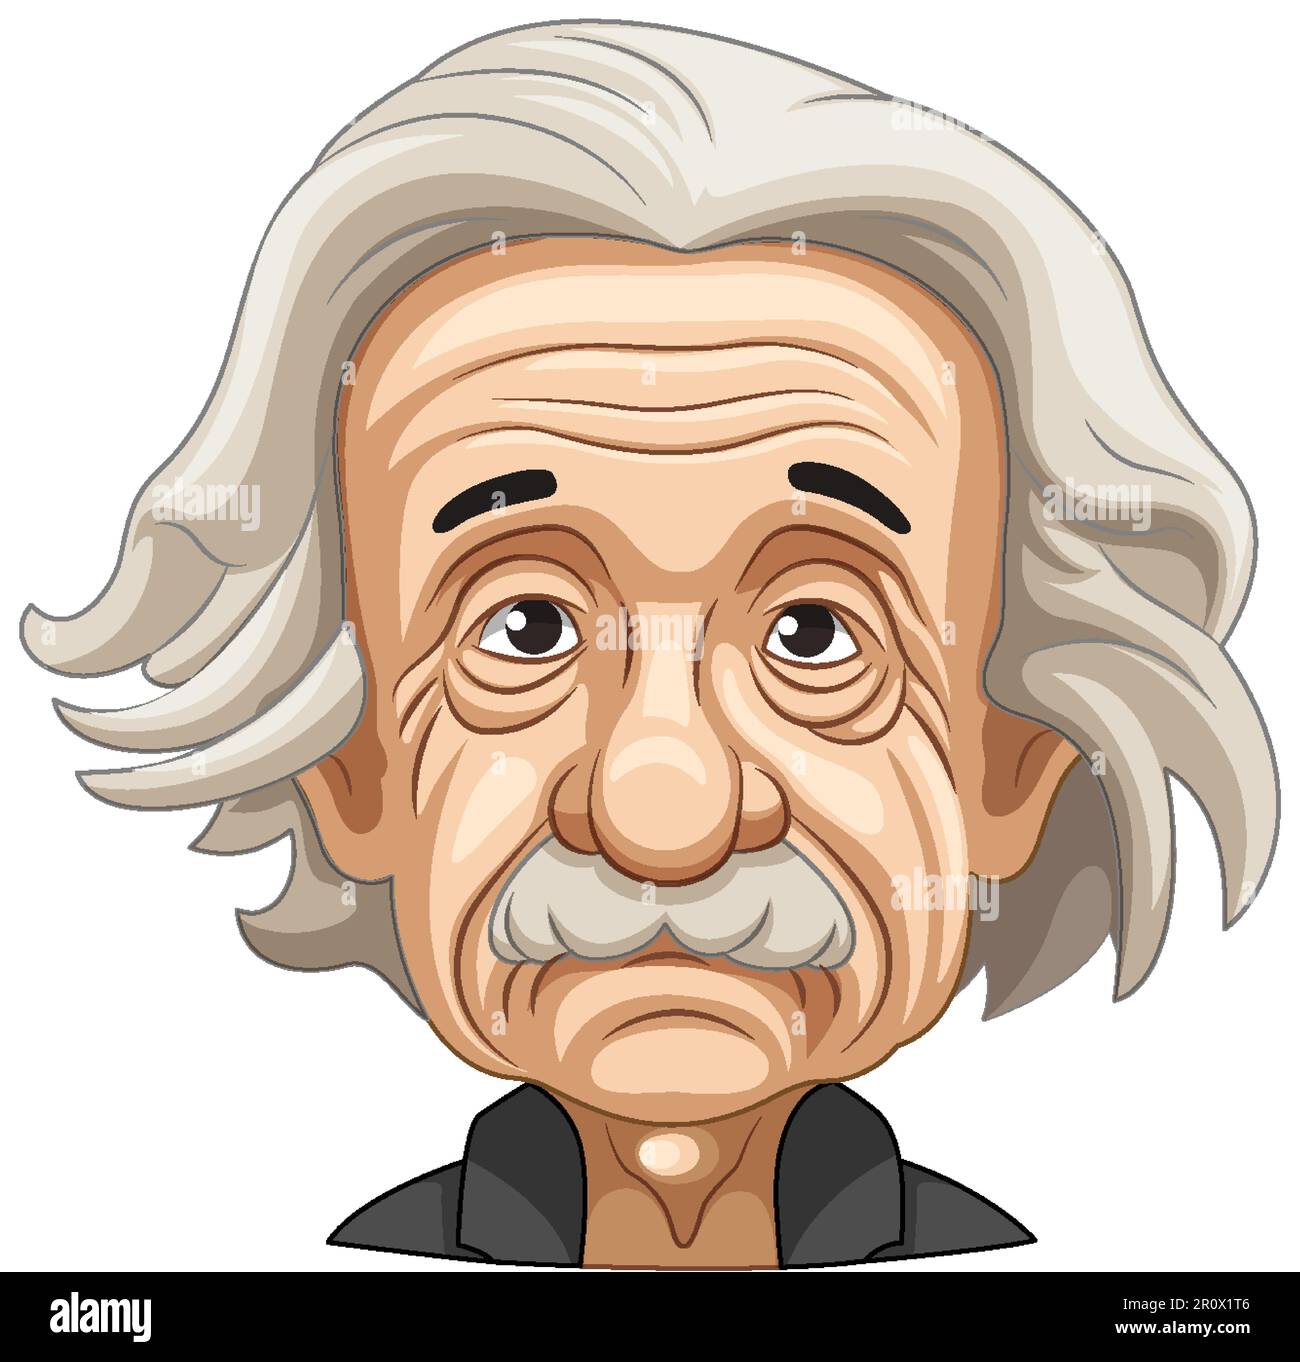 Albert Einstein Cartoon Portrait Illustration Stock Vector Image And Art